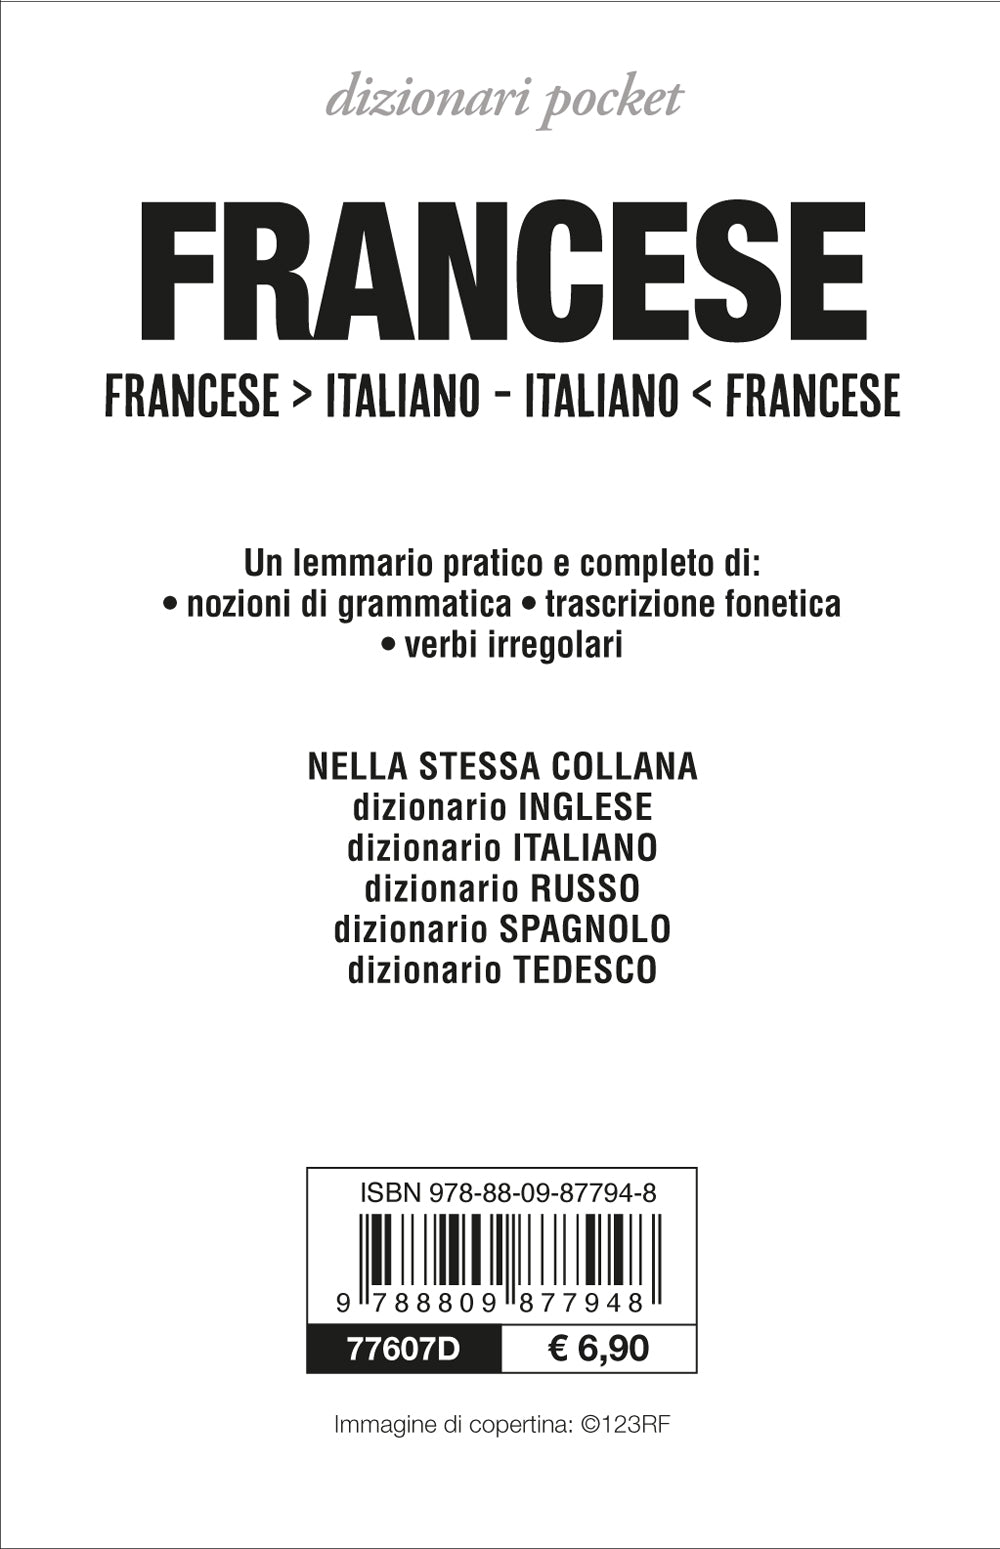 Dizionario francese. Francese-italiano, italiano-francese. Ediz. bilingue:  9788874936151 - AbeBooks